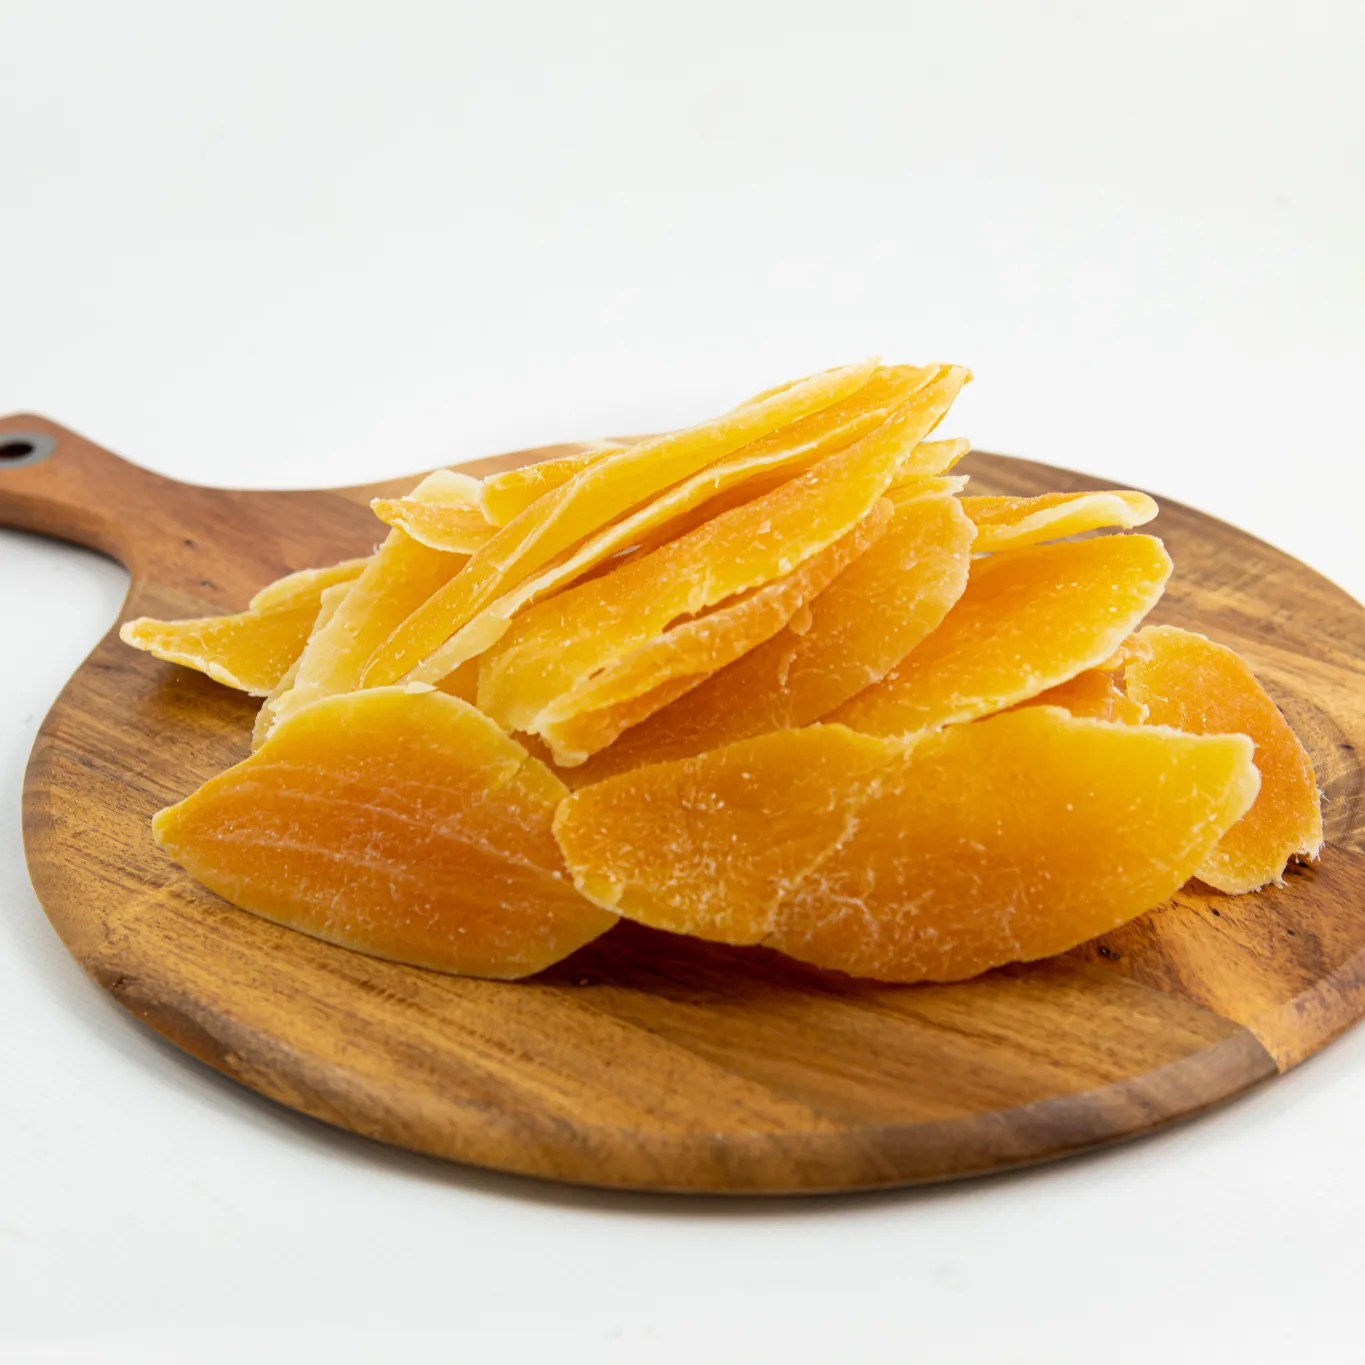 ドライマンゴースライス砂糖添加なしドライフルーツパッキングバッグPP 100% オーガニックベトナム製フルーツ